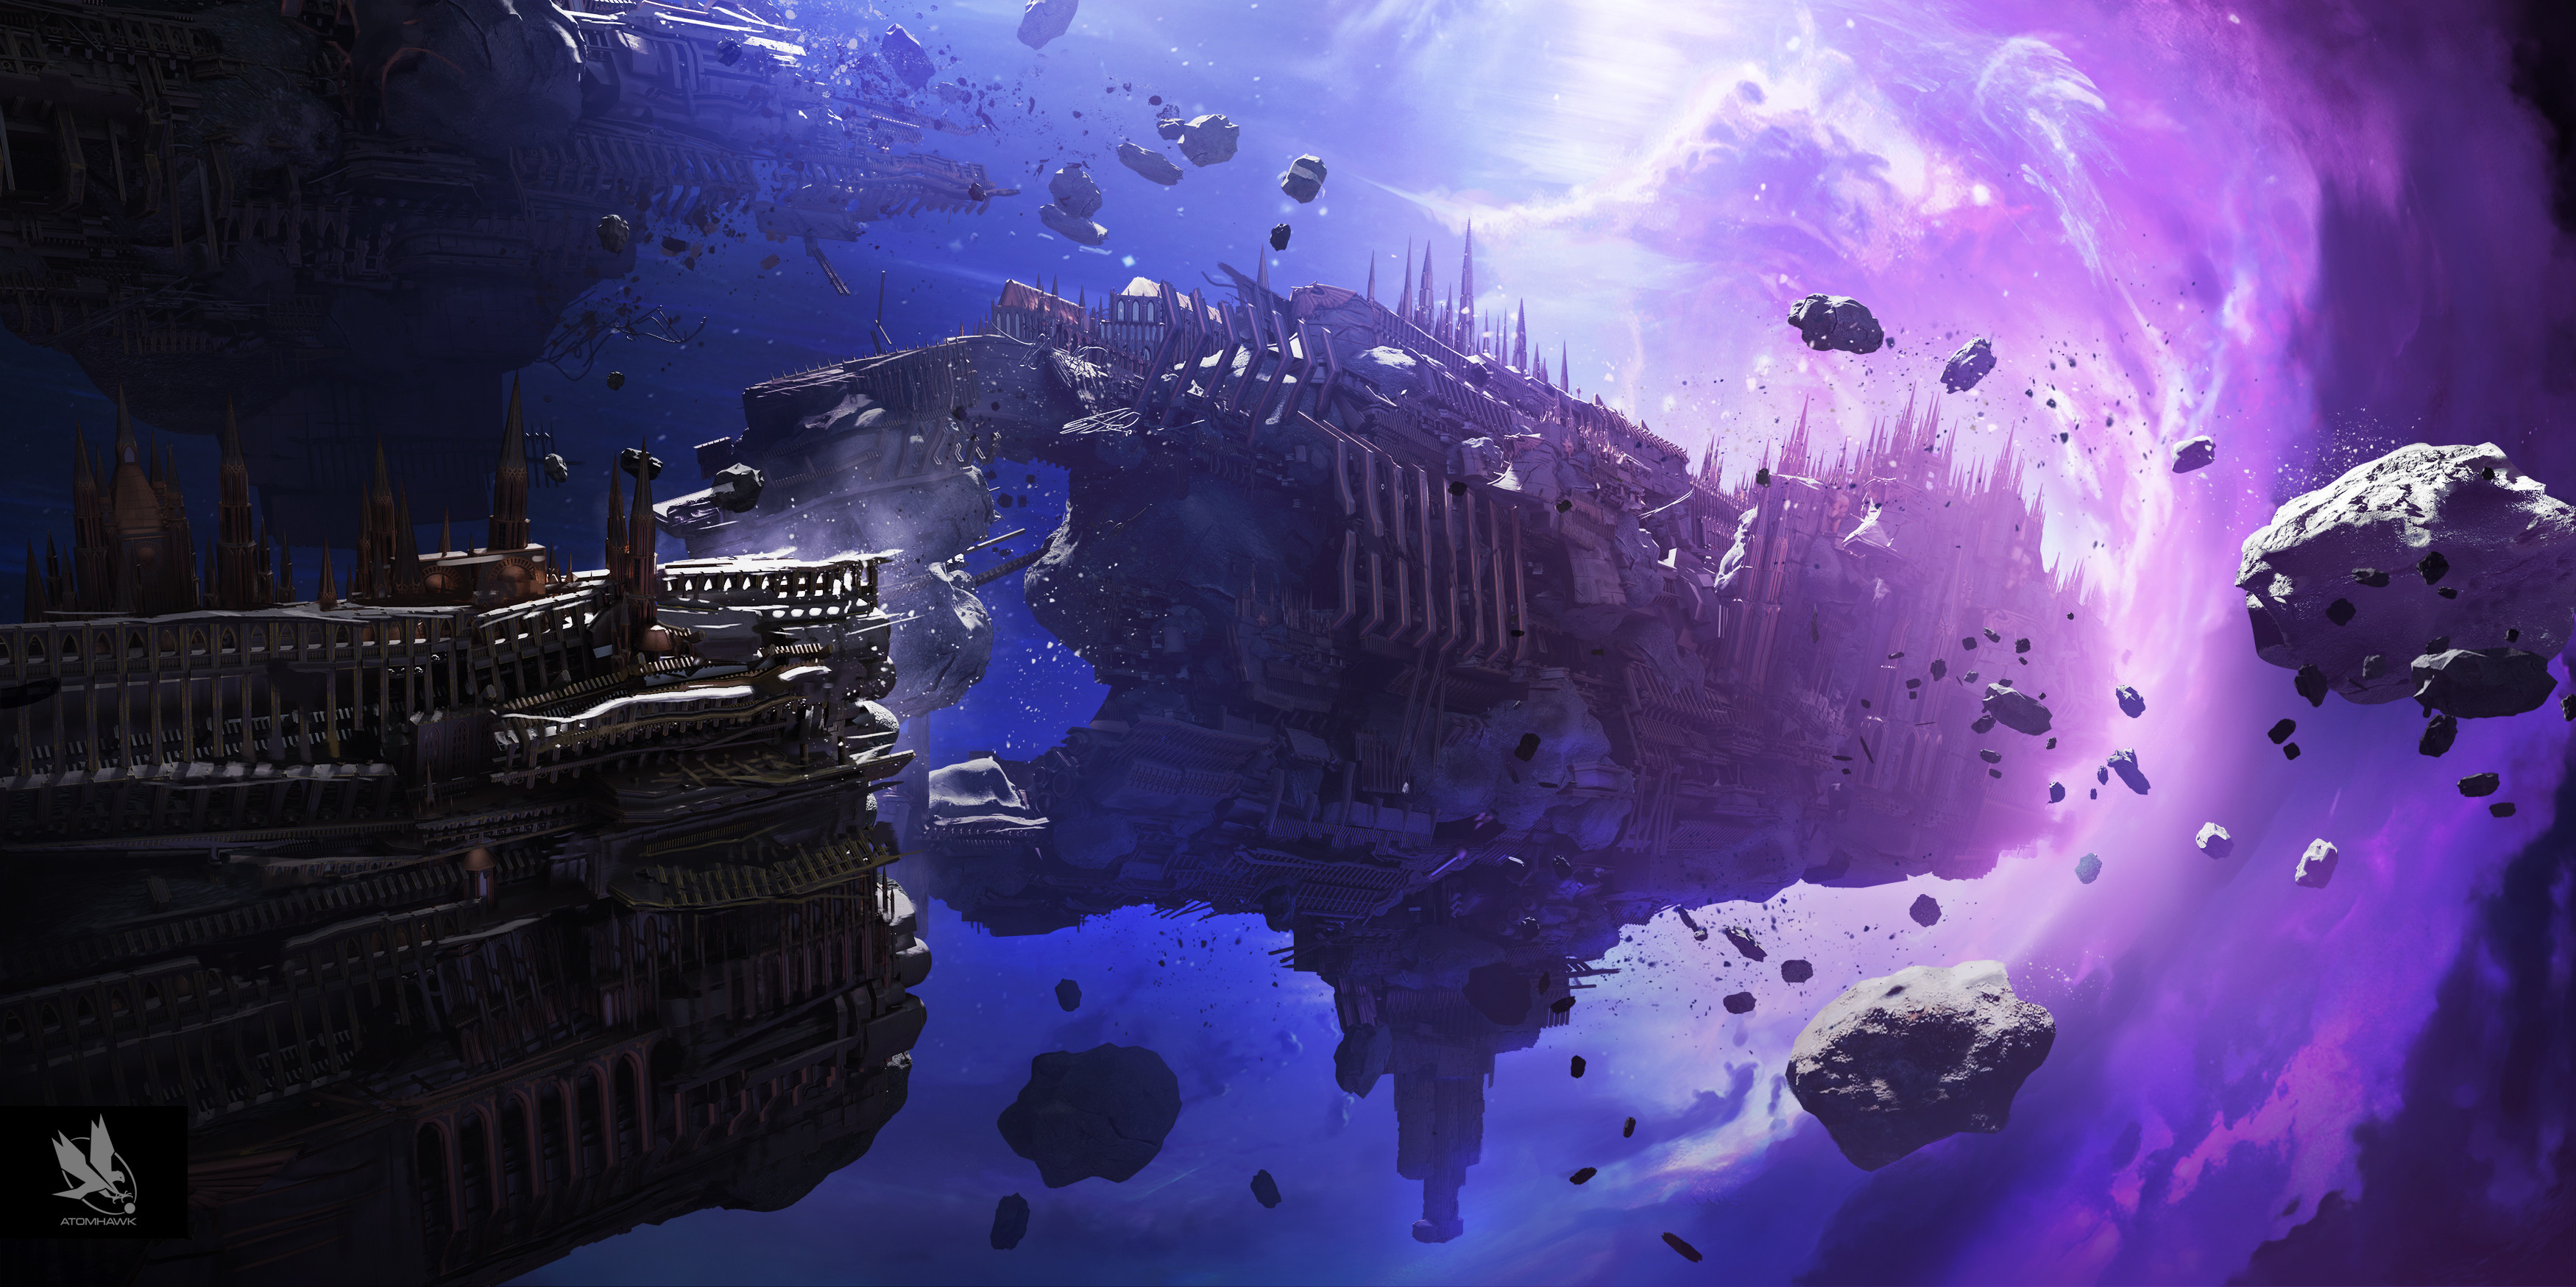 General 3500x1749 Warhammer 40,000 spaceship wormhole the warp purple blue white debris wreck video games